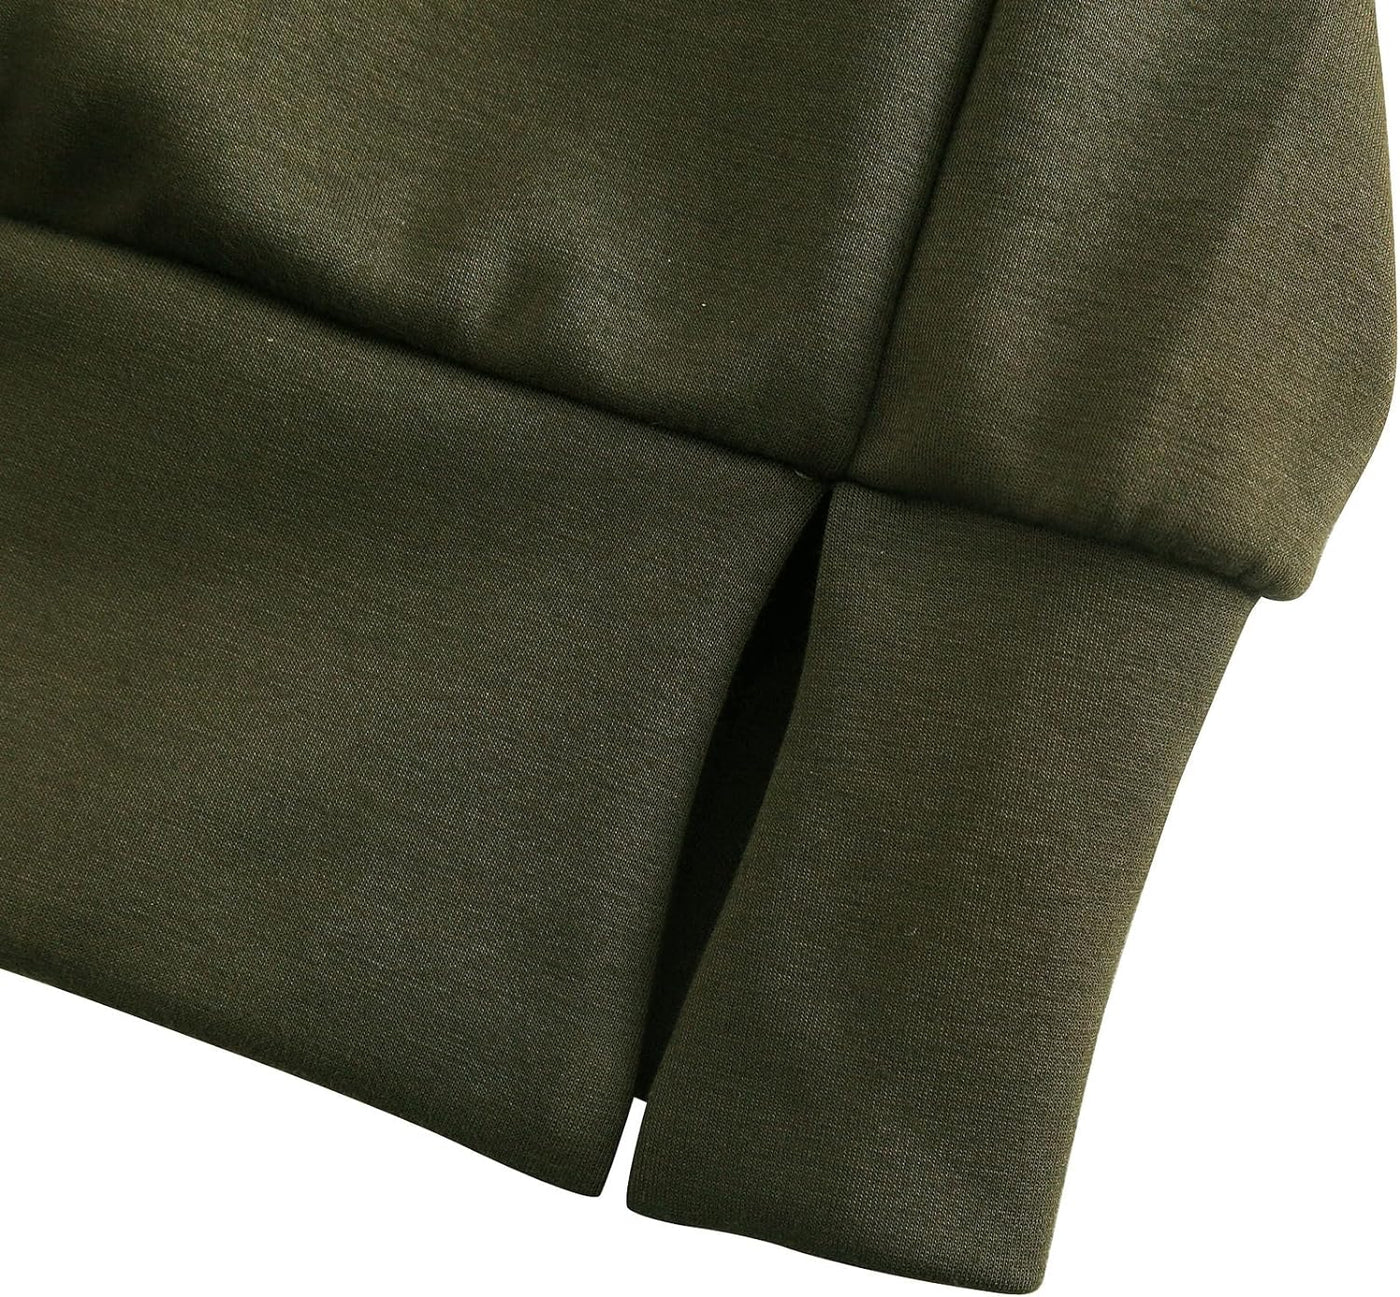 NTG Fad Cropped Quarter Zip Sweatshirts Slightly Crop Tops